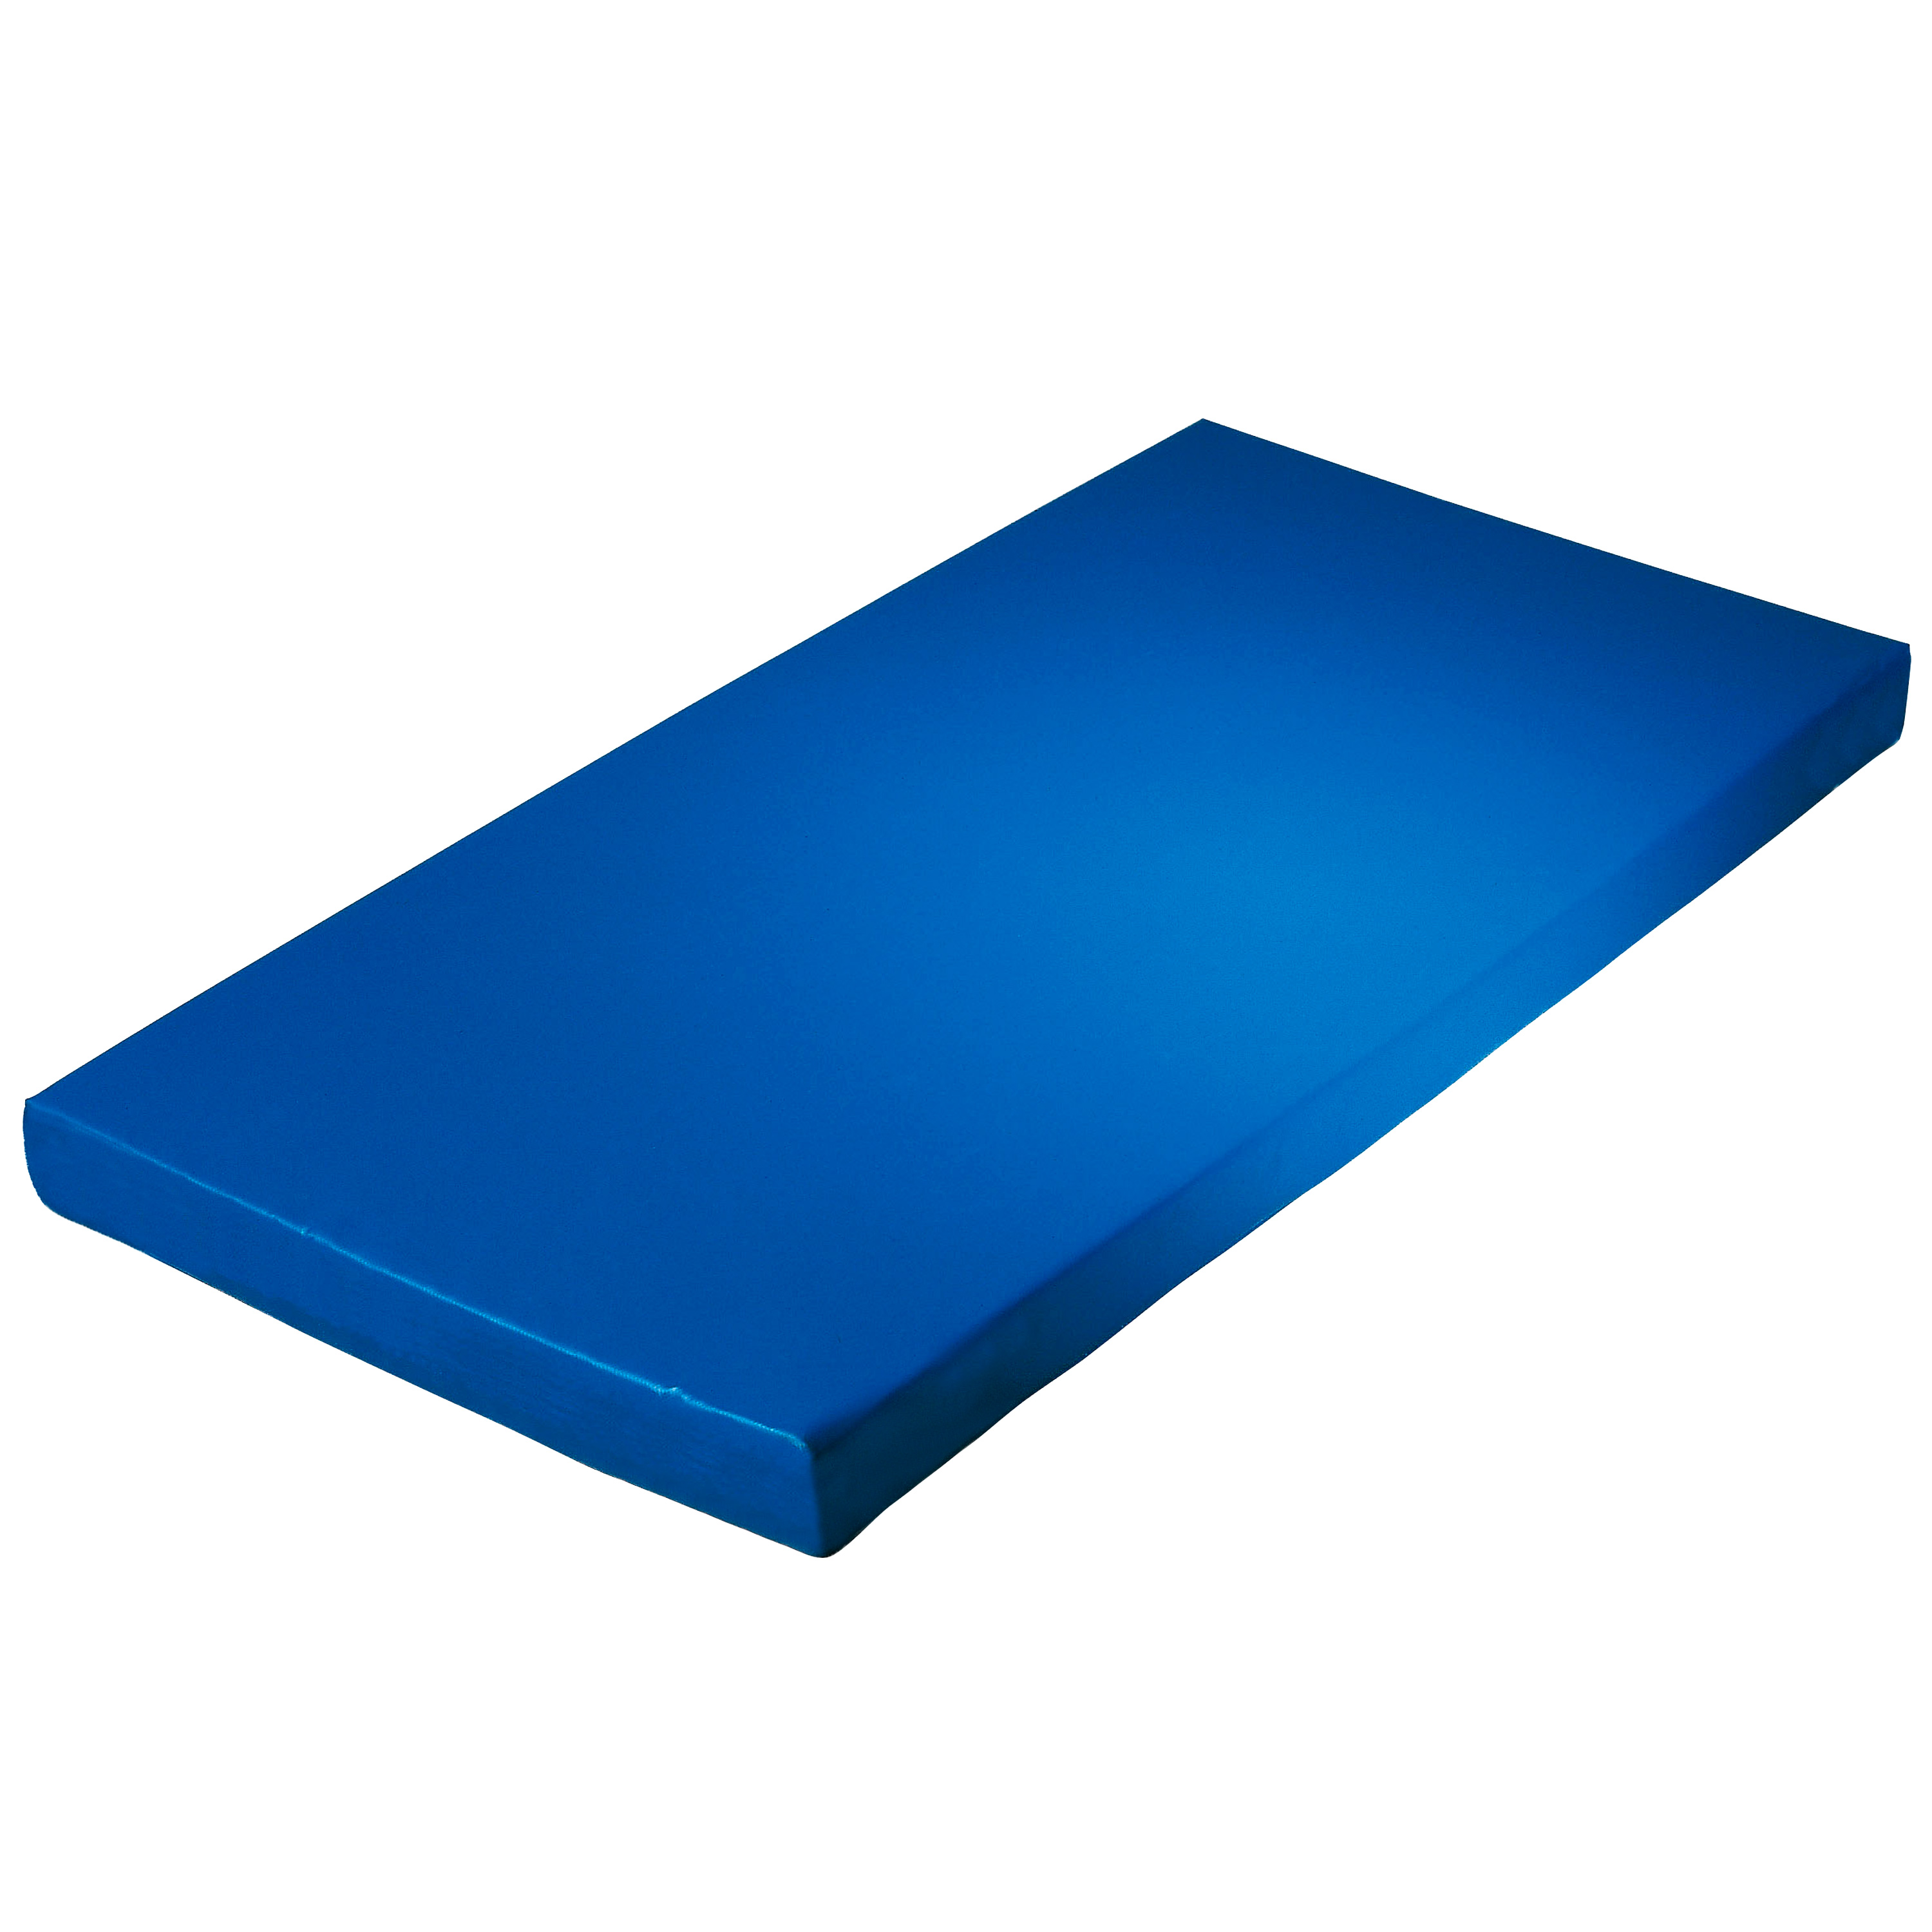 Super-Leichtturnmatte 200 x 125 x 6 cm, blau